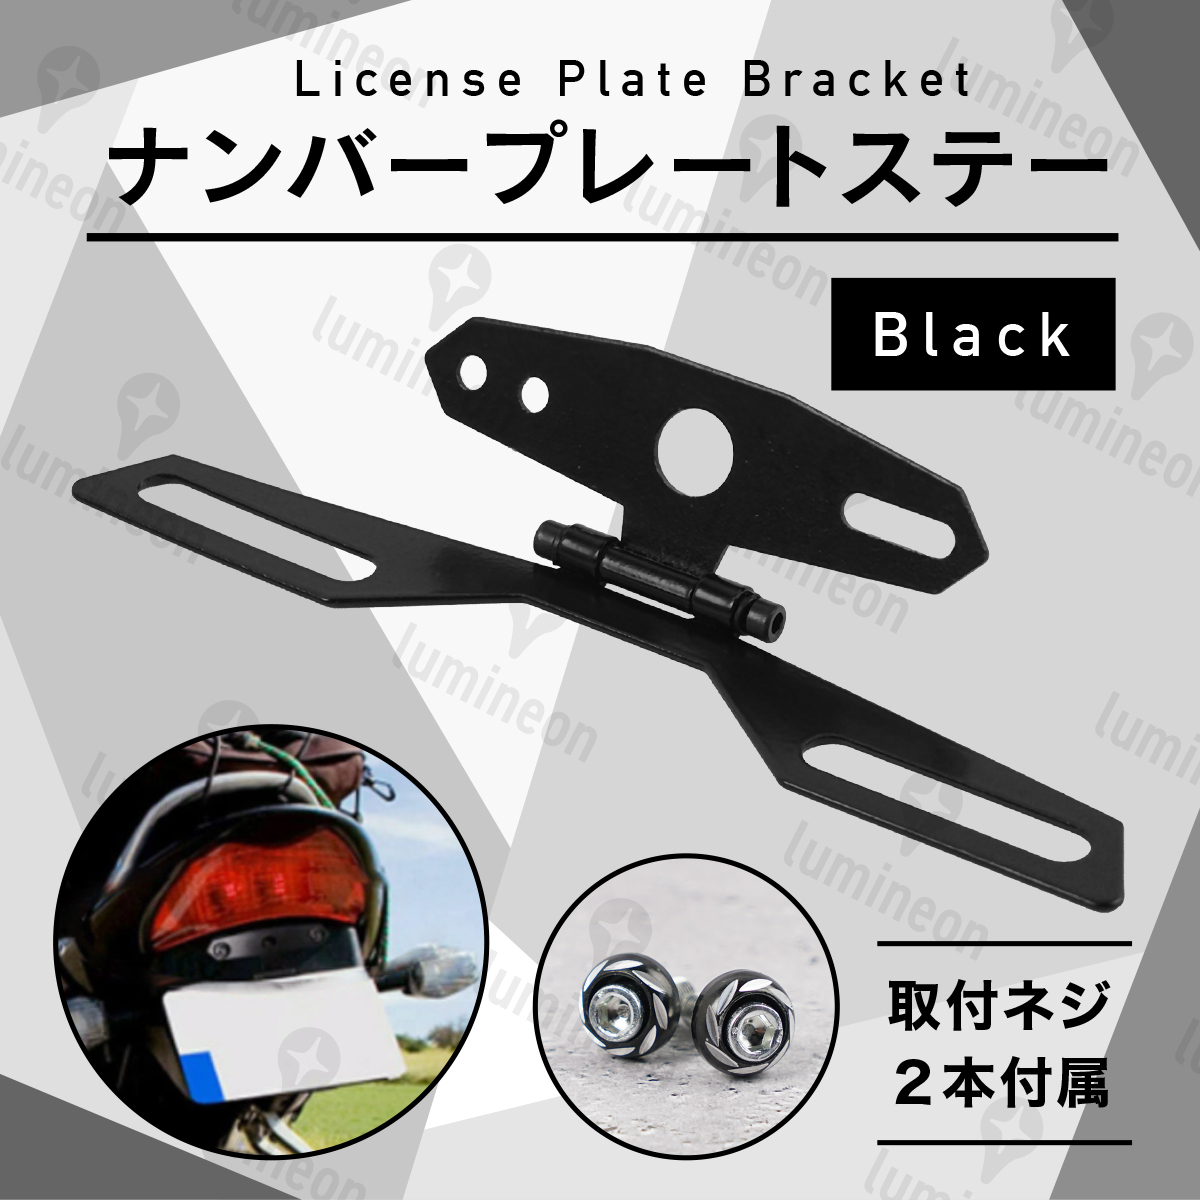 ナンバー ステー ナンバープレート バイク フェンダーレス 裏ペタ 原付 中型 大型 汎用 オートバイ ブラック 黒 パタパタ 角度調節 g005 2_画像1